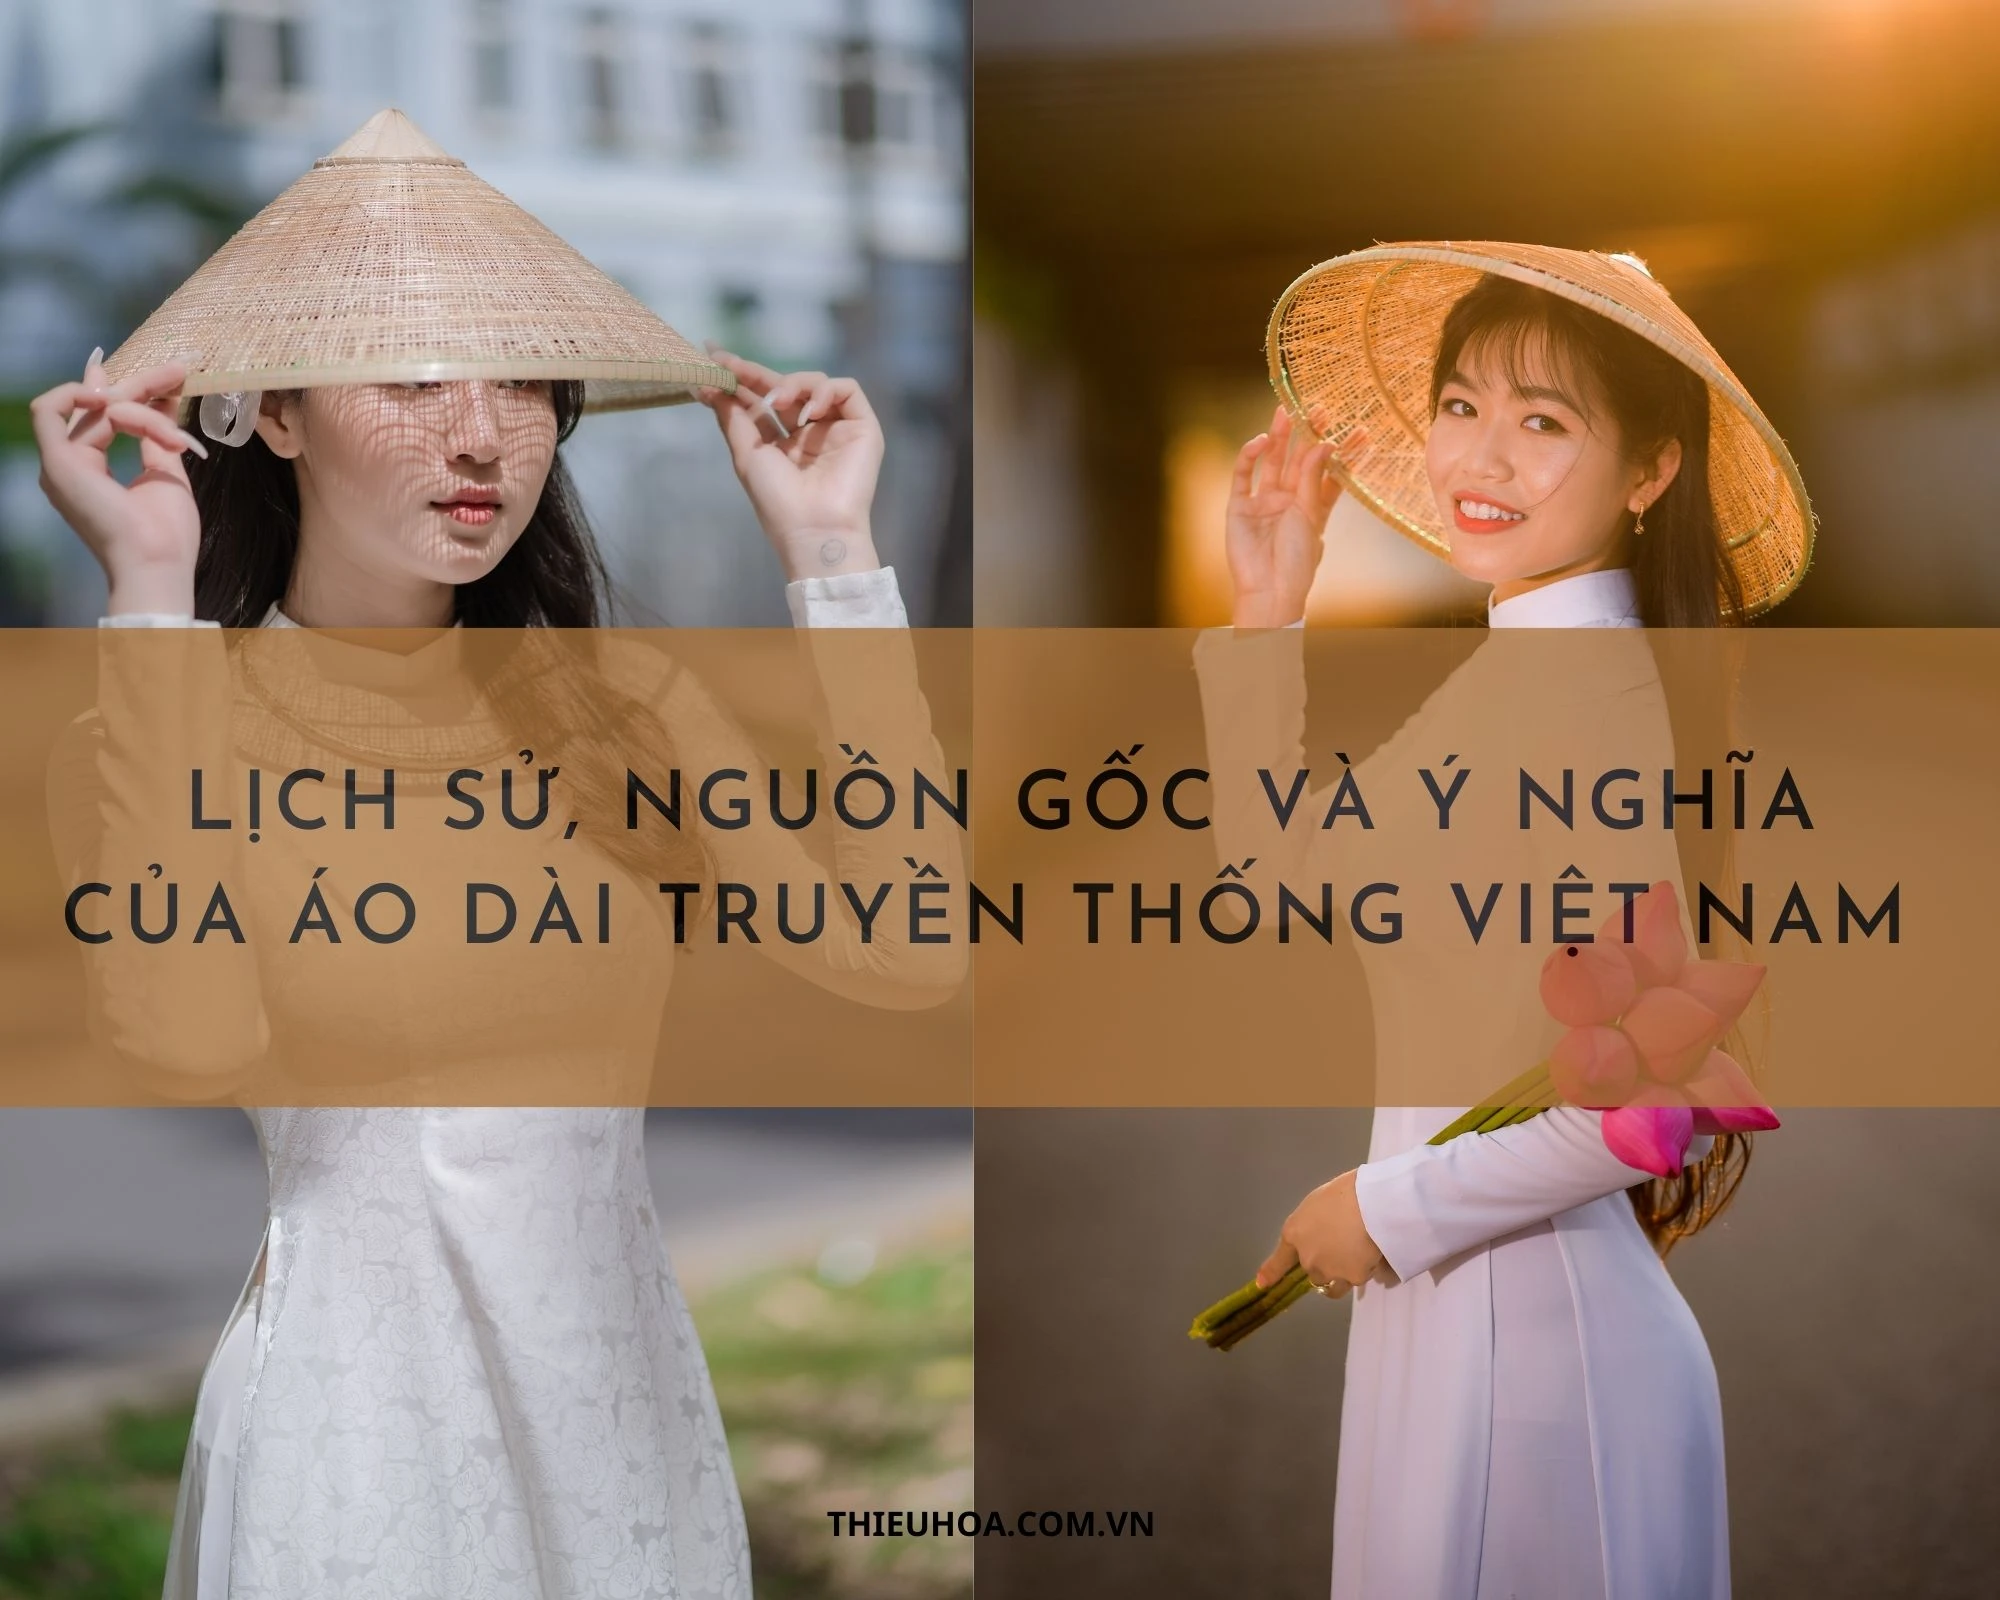 Lịch sử, nguồn gốc, ý nghĩa của áo dài truyền thống Việt Nam